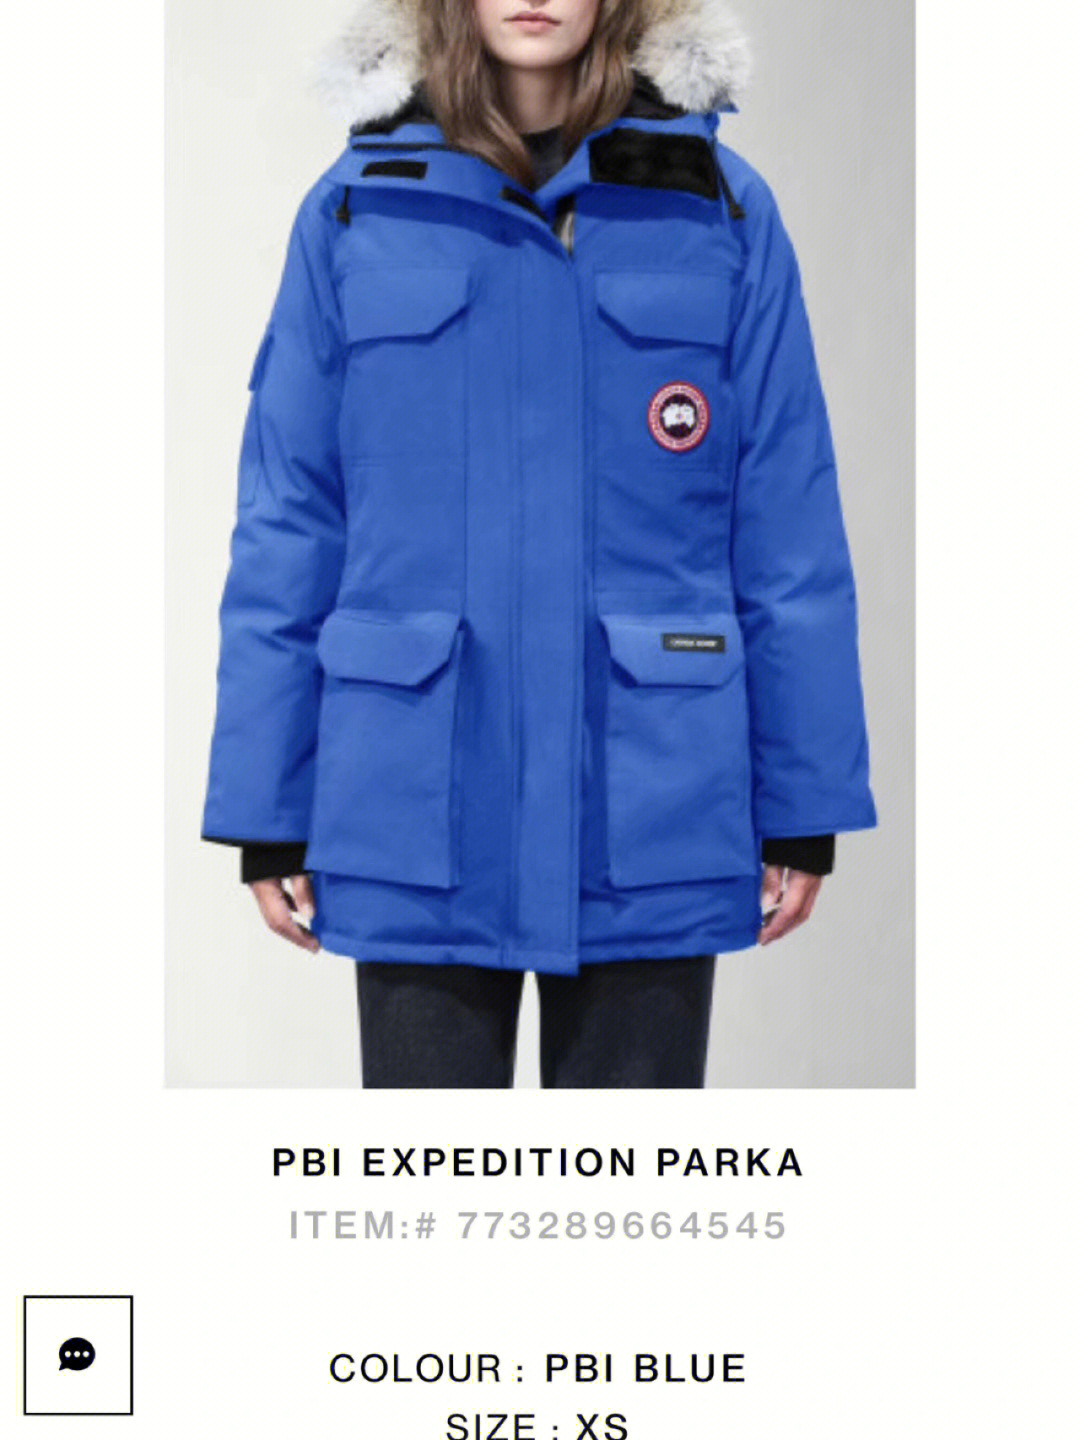 购入了9896大鹅远征款,当时选择了蓝色的pbi blue北极熊款(题外话